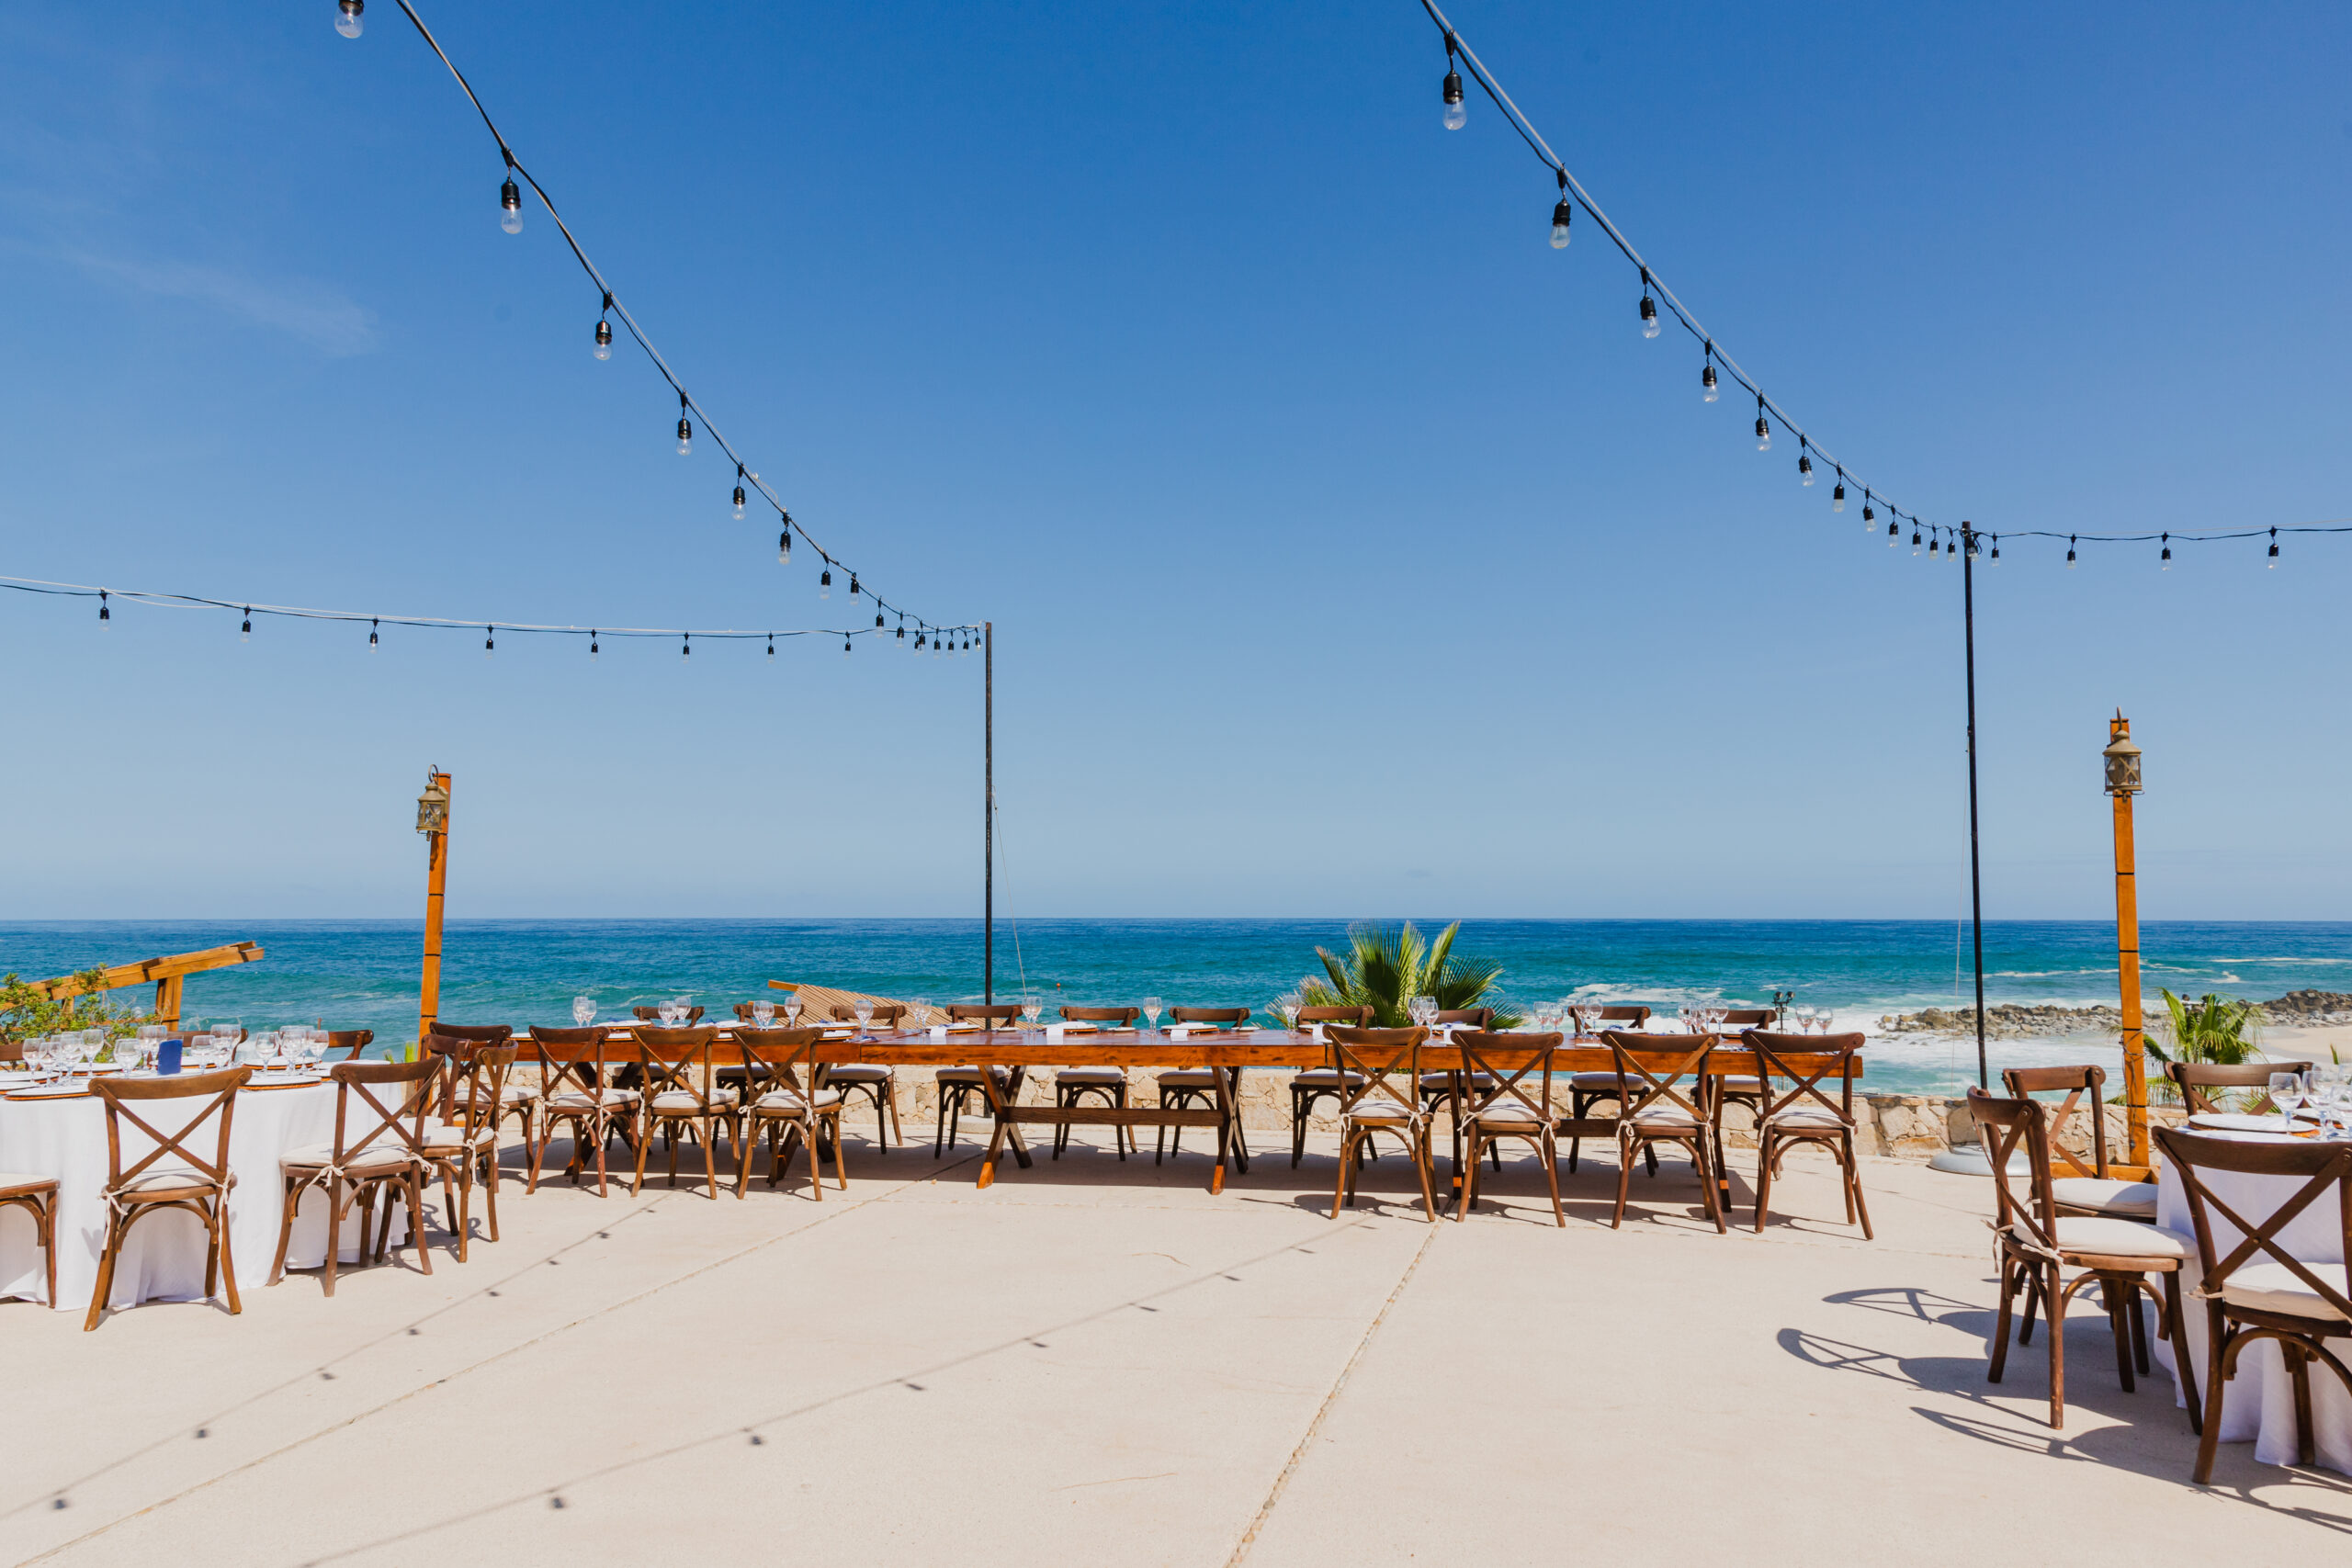 Imagen del restaurante al aire libre con vistas al mar.